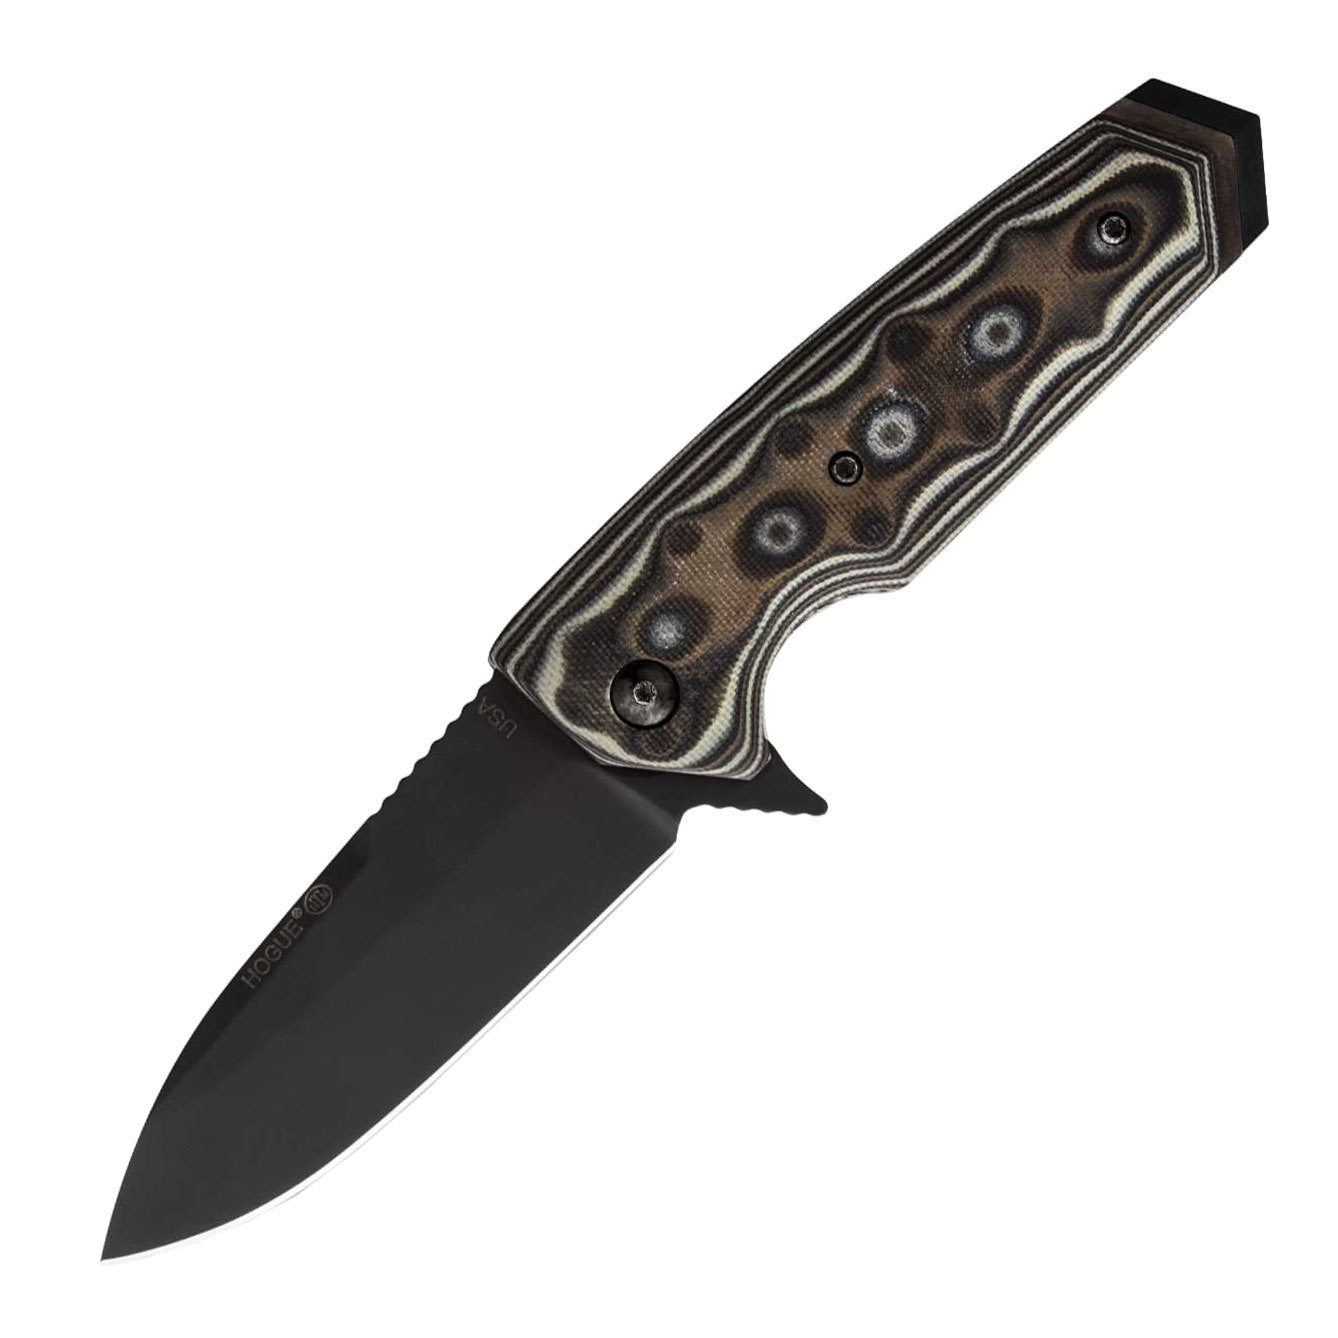 Нож складной Hogue Elishewitz EX-02 Spear Point, сталь 154CM, рукоять стеклотекстолит G-Mascus®, темно-серый